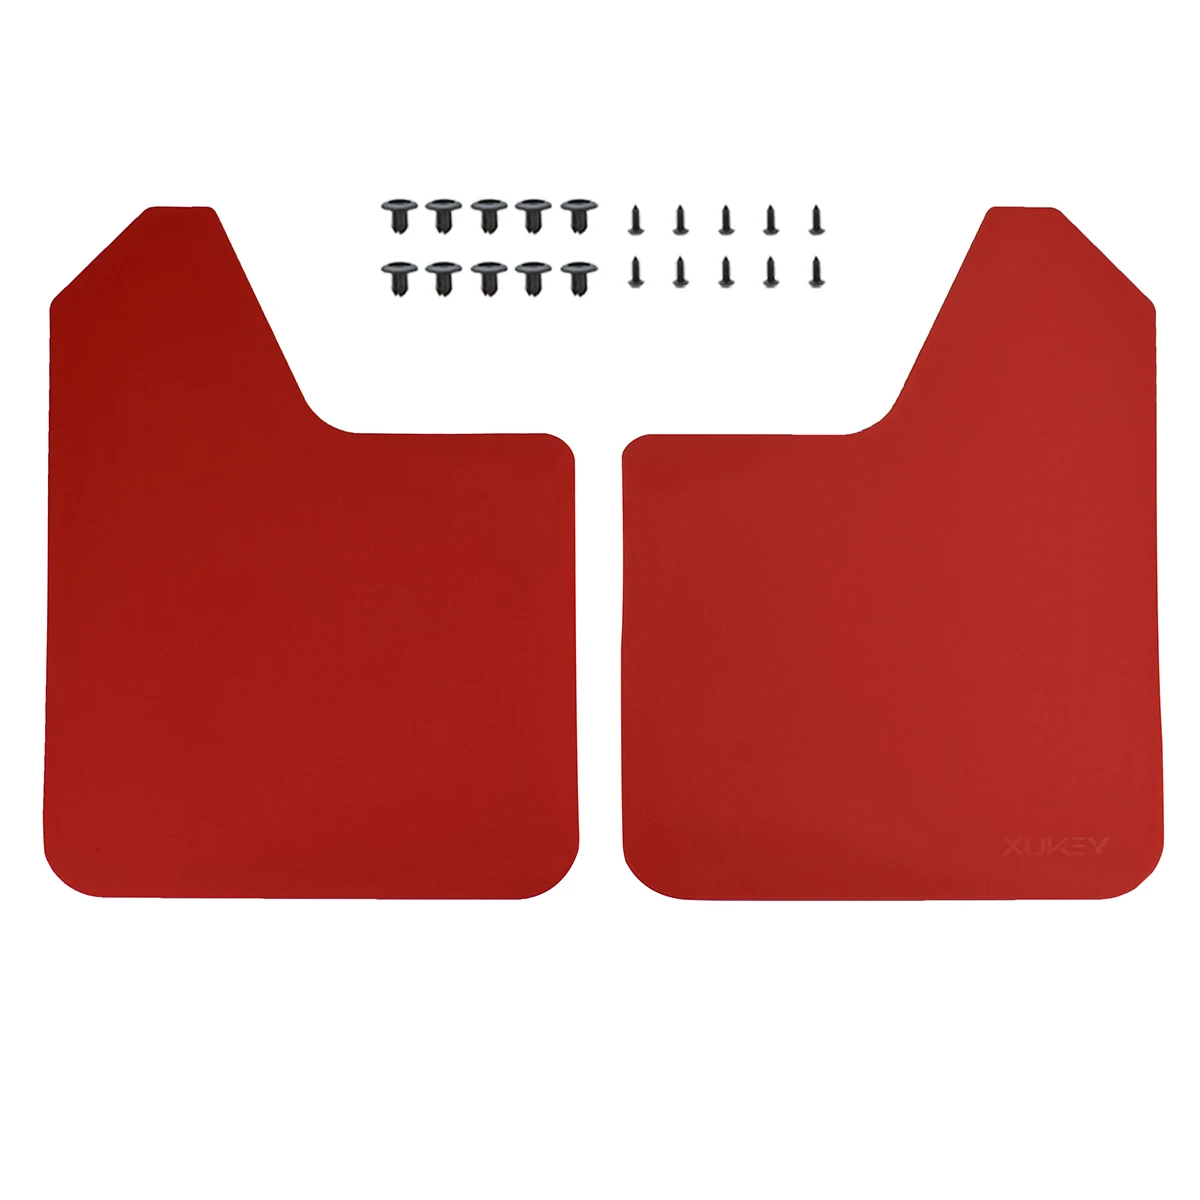 Ралли Брызговики для Honda Jazz HRV Pilot Vezel Element Elysion Odyssey Insight Jade Legend Acura - Цвет: 2pcs-set Red